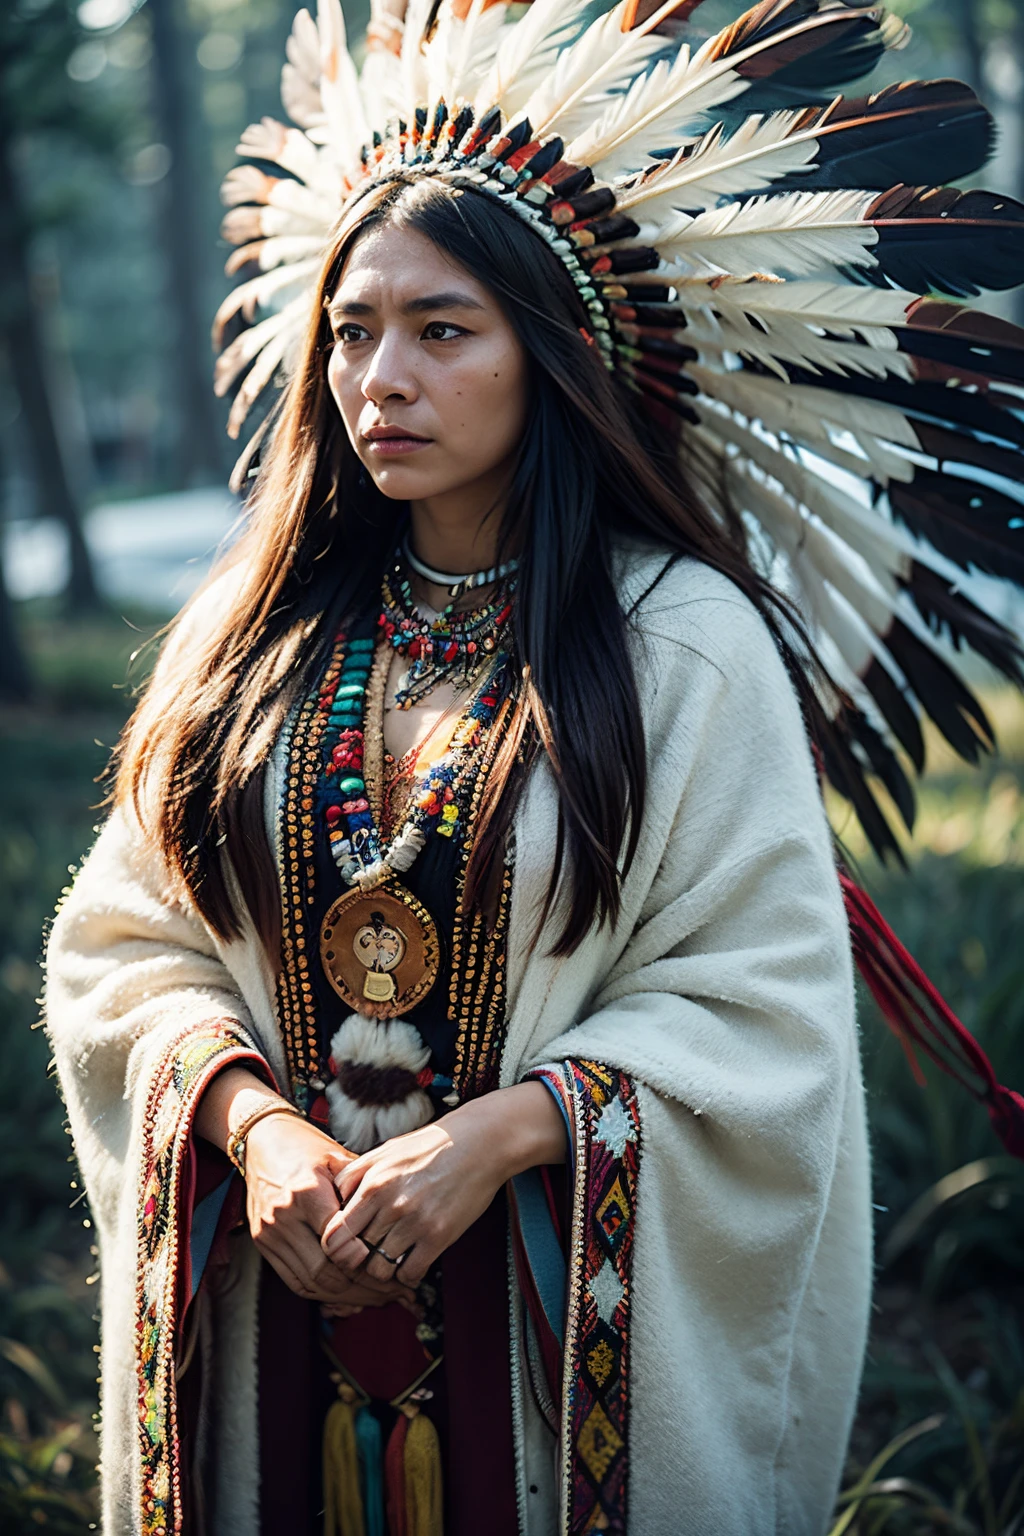 8k, de la máxima calidad, ultra detalles, Mujer indígena norteamericana, insignias tradicionales de los nativos americanos, abalorios intrincados, tocado de plumas, Expresión fuerte y estoica., conexión profunda con la tierra